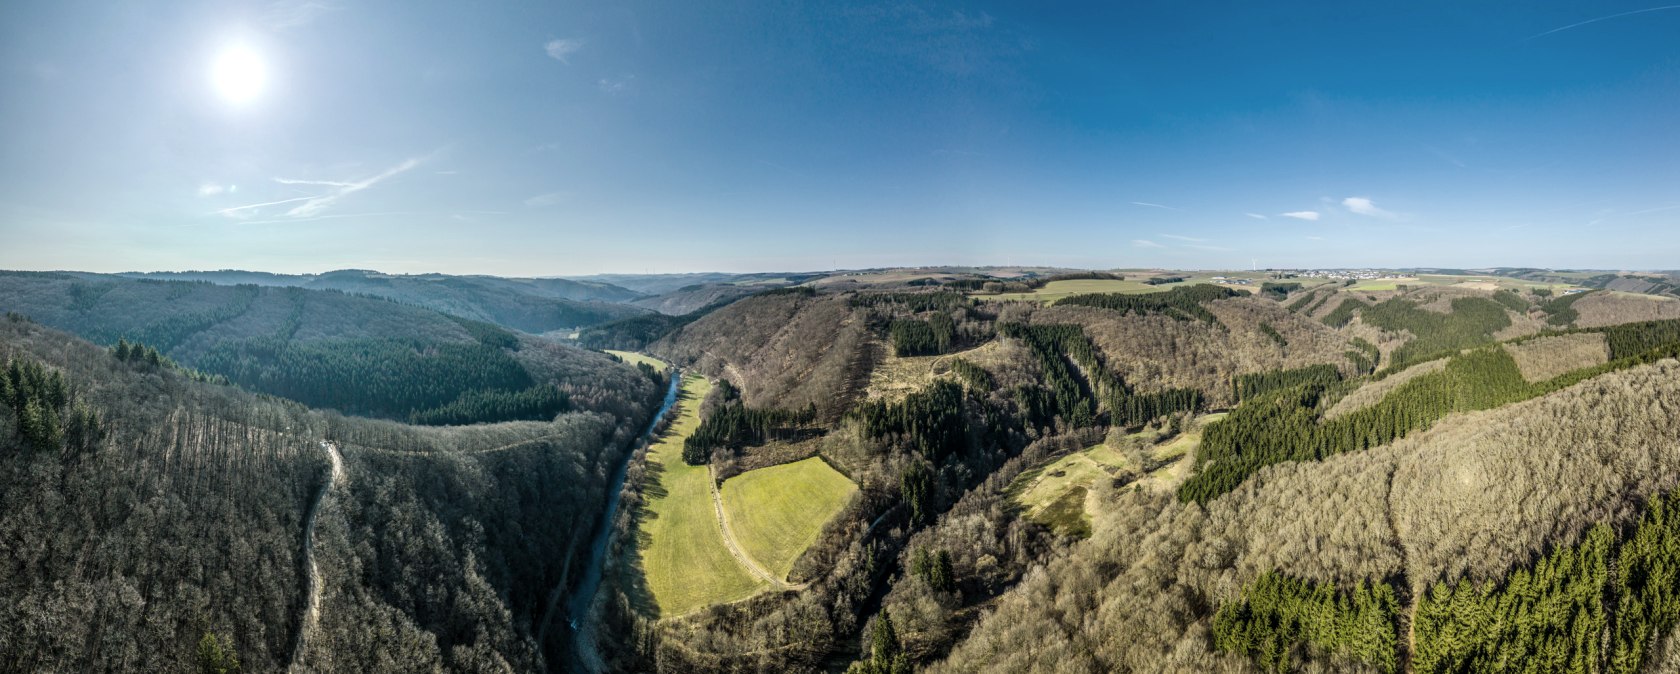 Aussichtspunkt Königsley mit Blick ins Ourtal, © Eifel Tourismus GmbH, D. Ketz